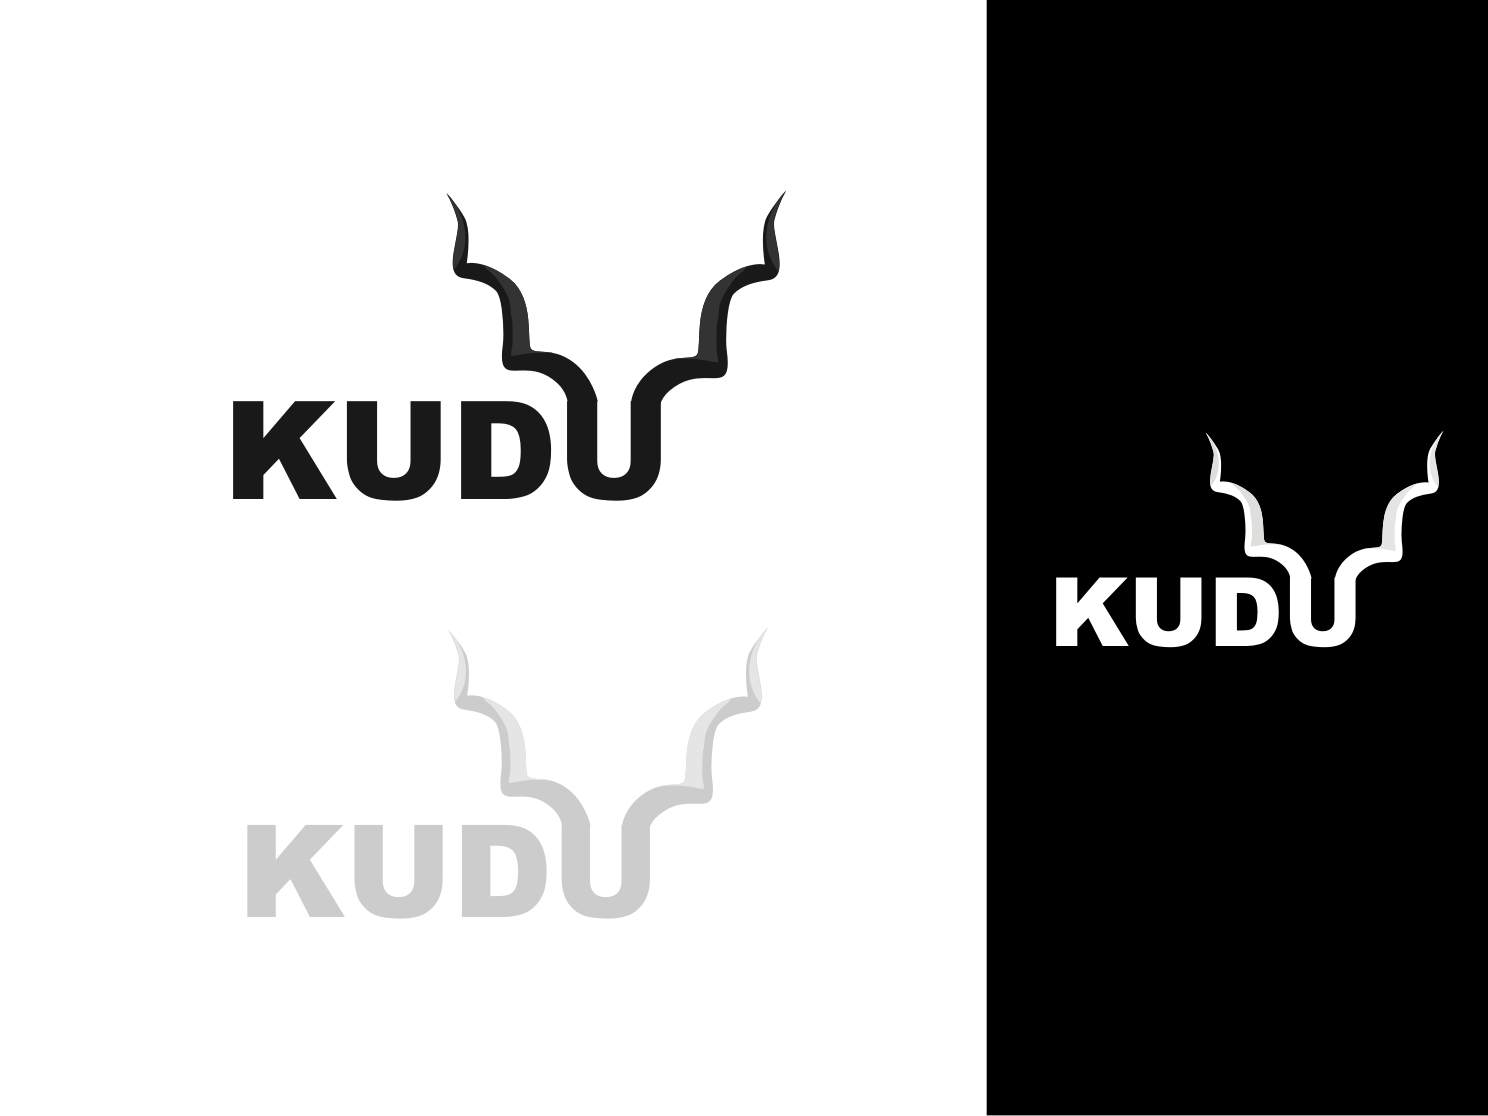 Kudu Logo - Modern, Elegant, Home Improvement Logo Design for Kudu